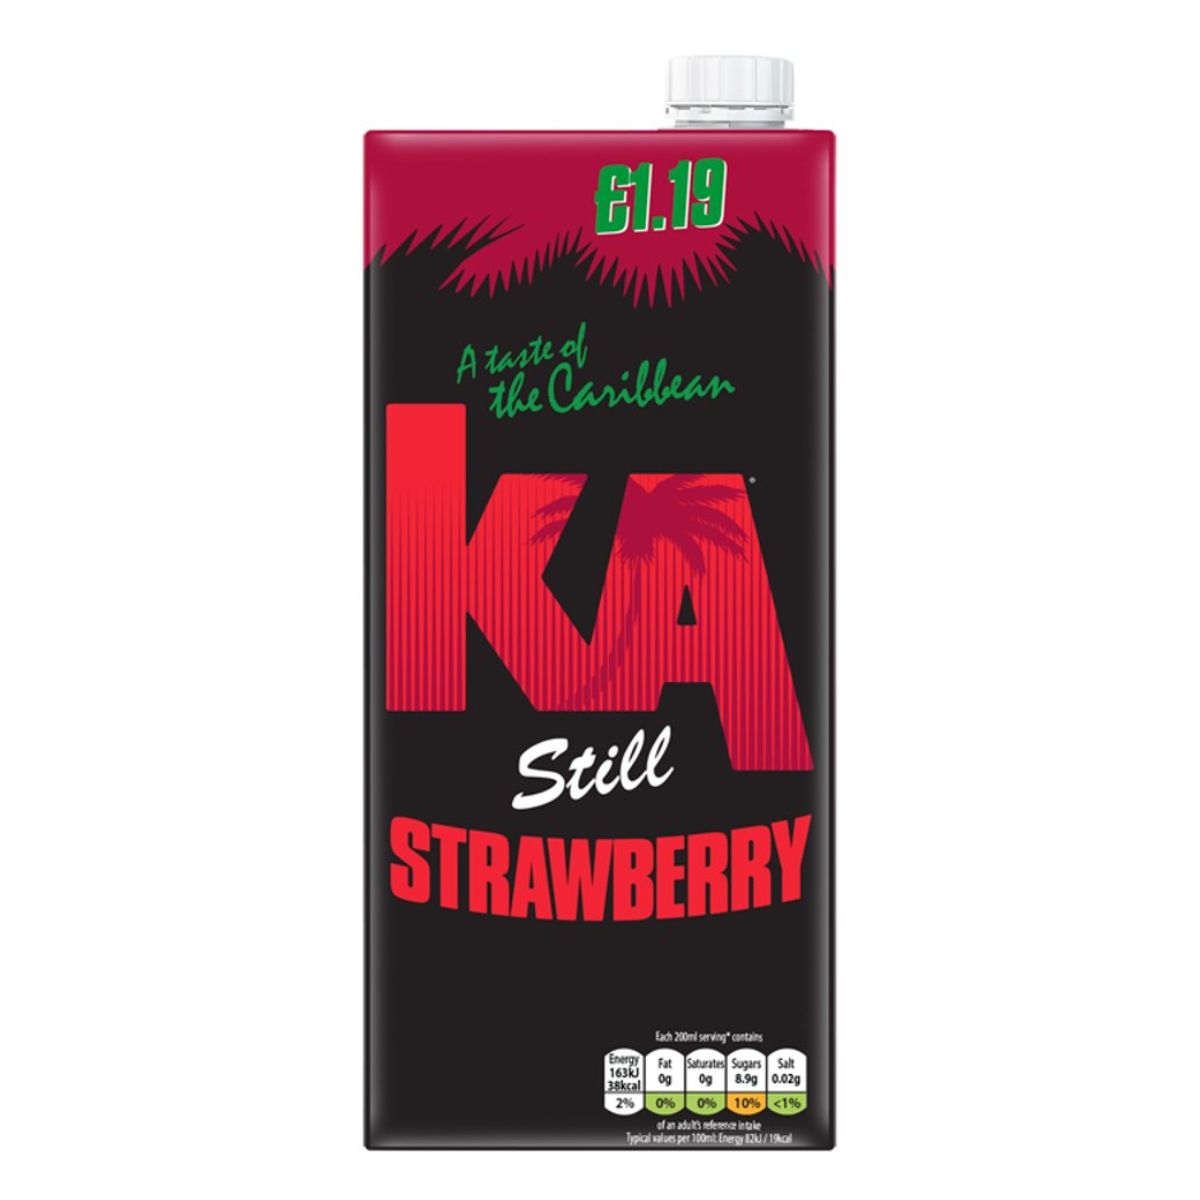 A bottle of KA - Still Strawberry - 1L juice on a white background.